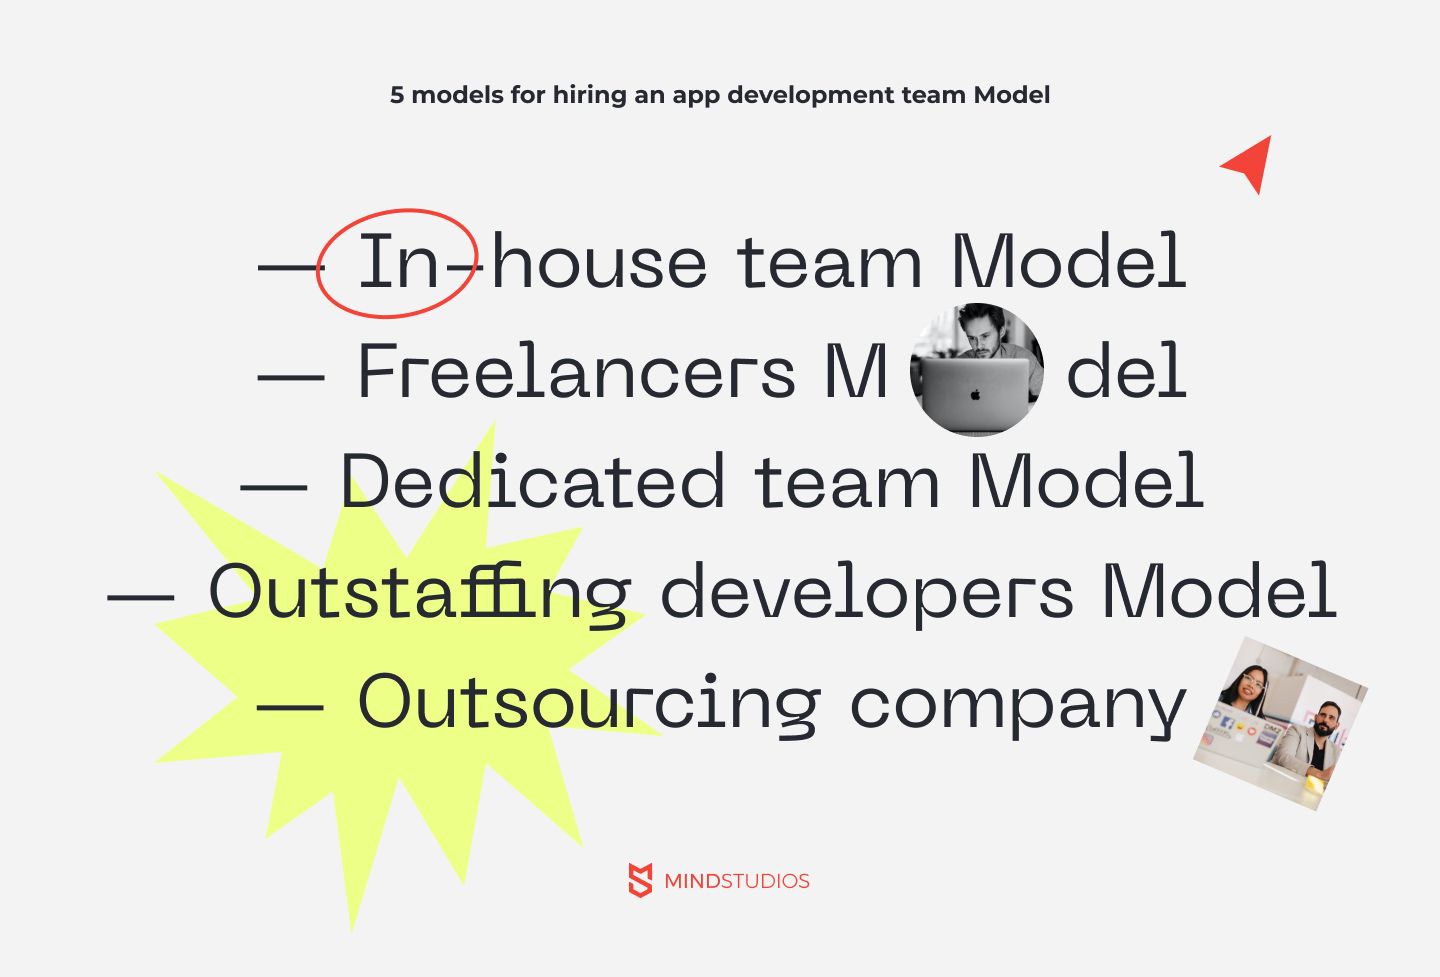 Five models for hiring an app development team